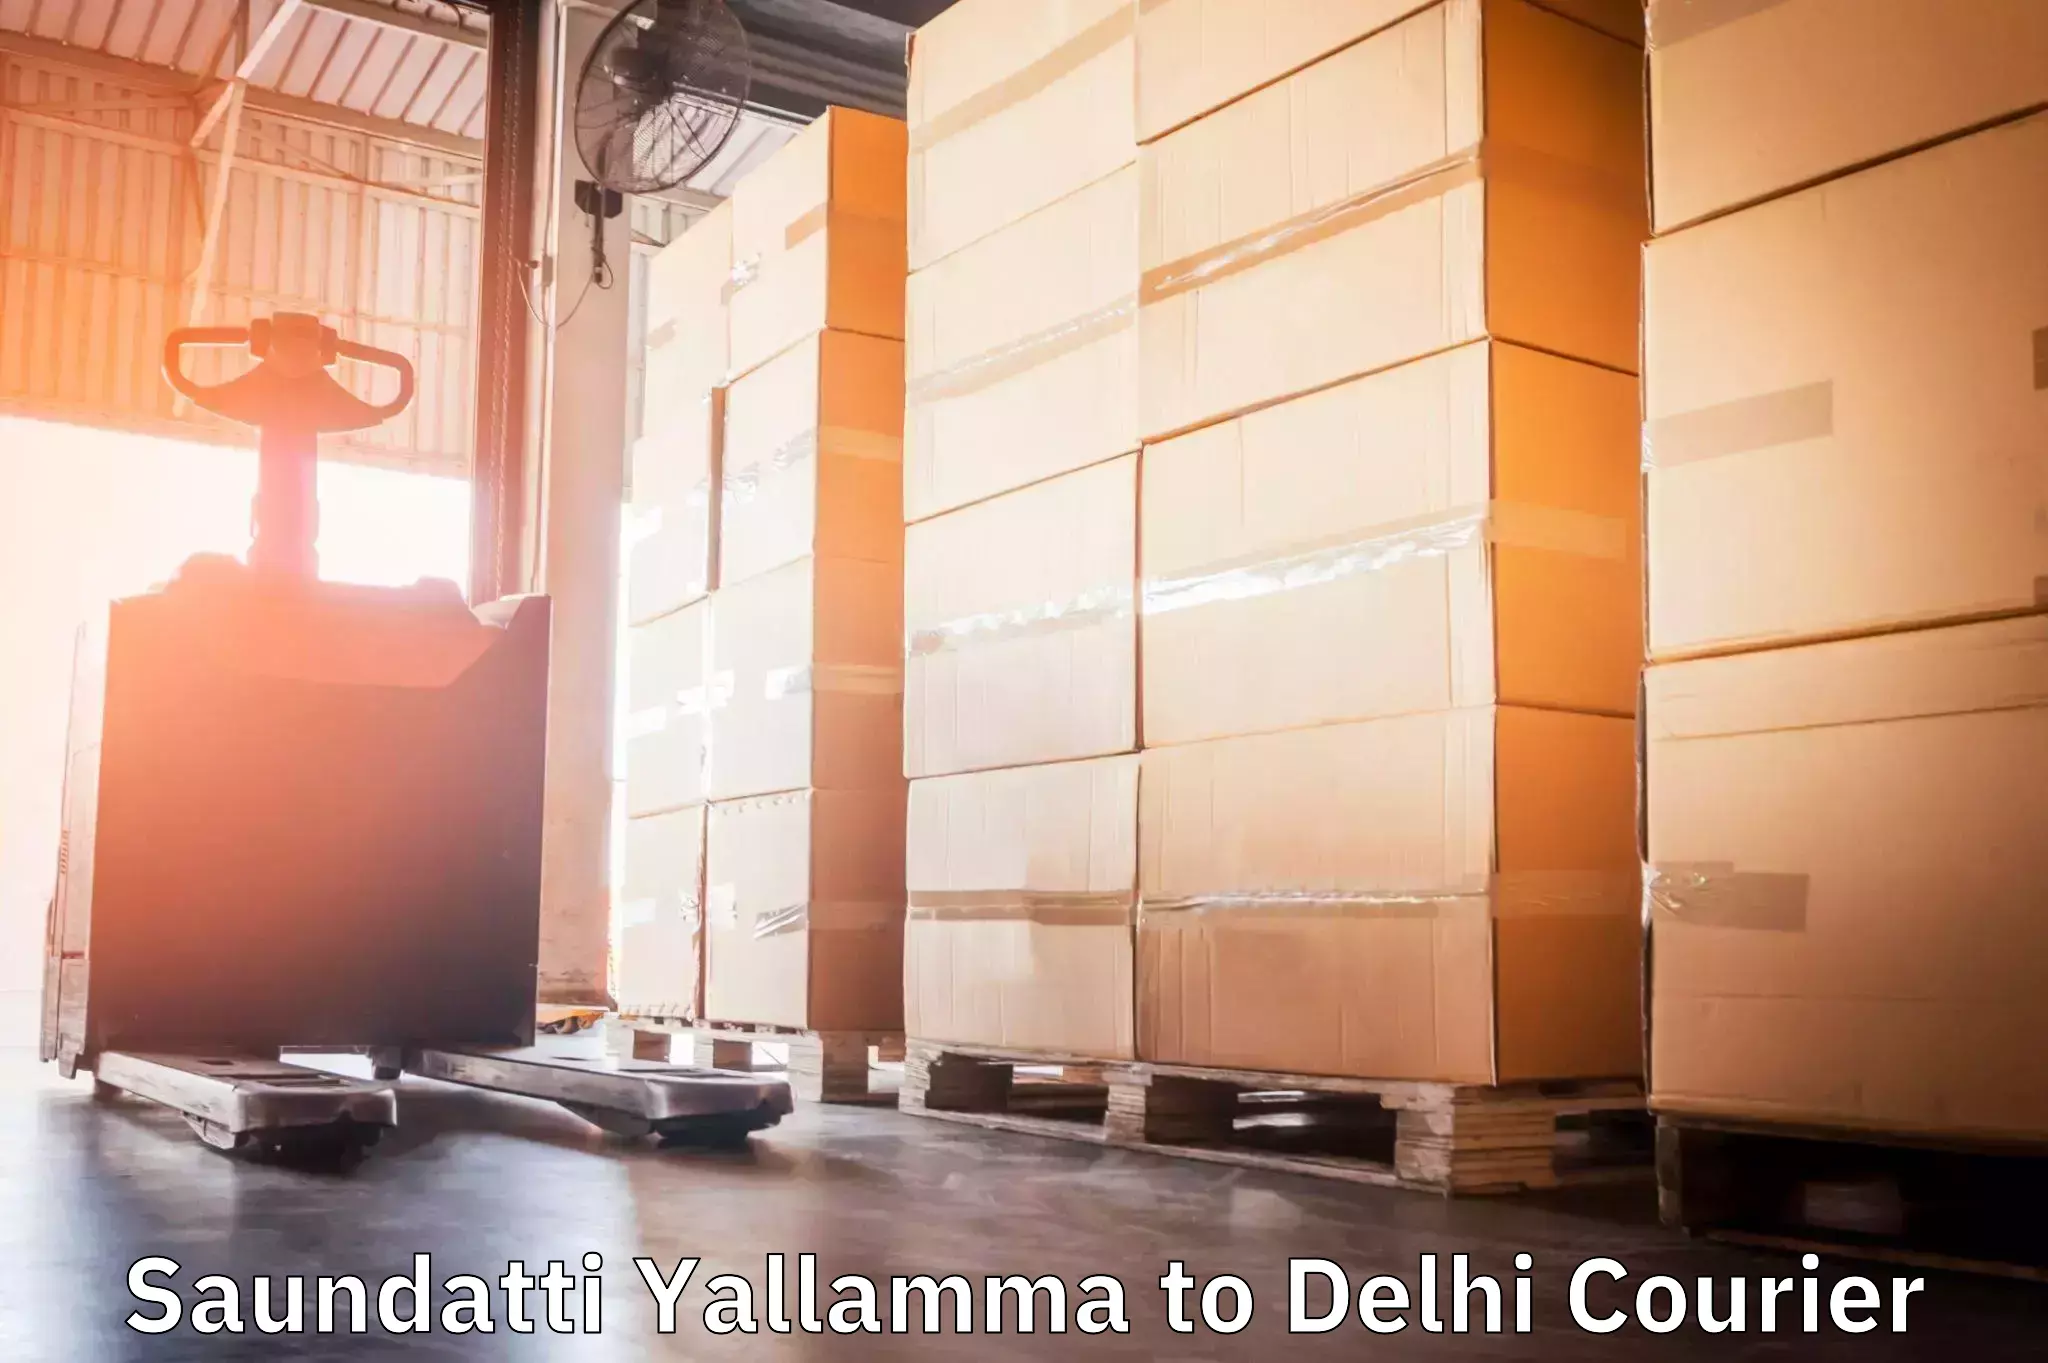 Advanced delivery solutions Saundatti Yallamma to Burari